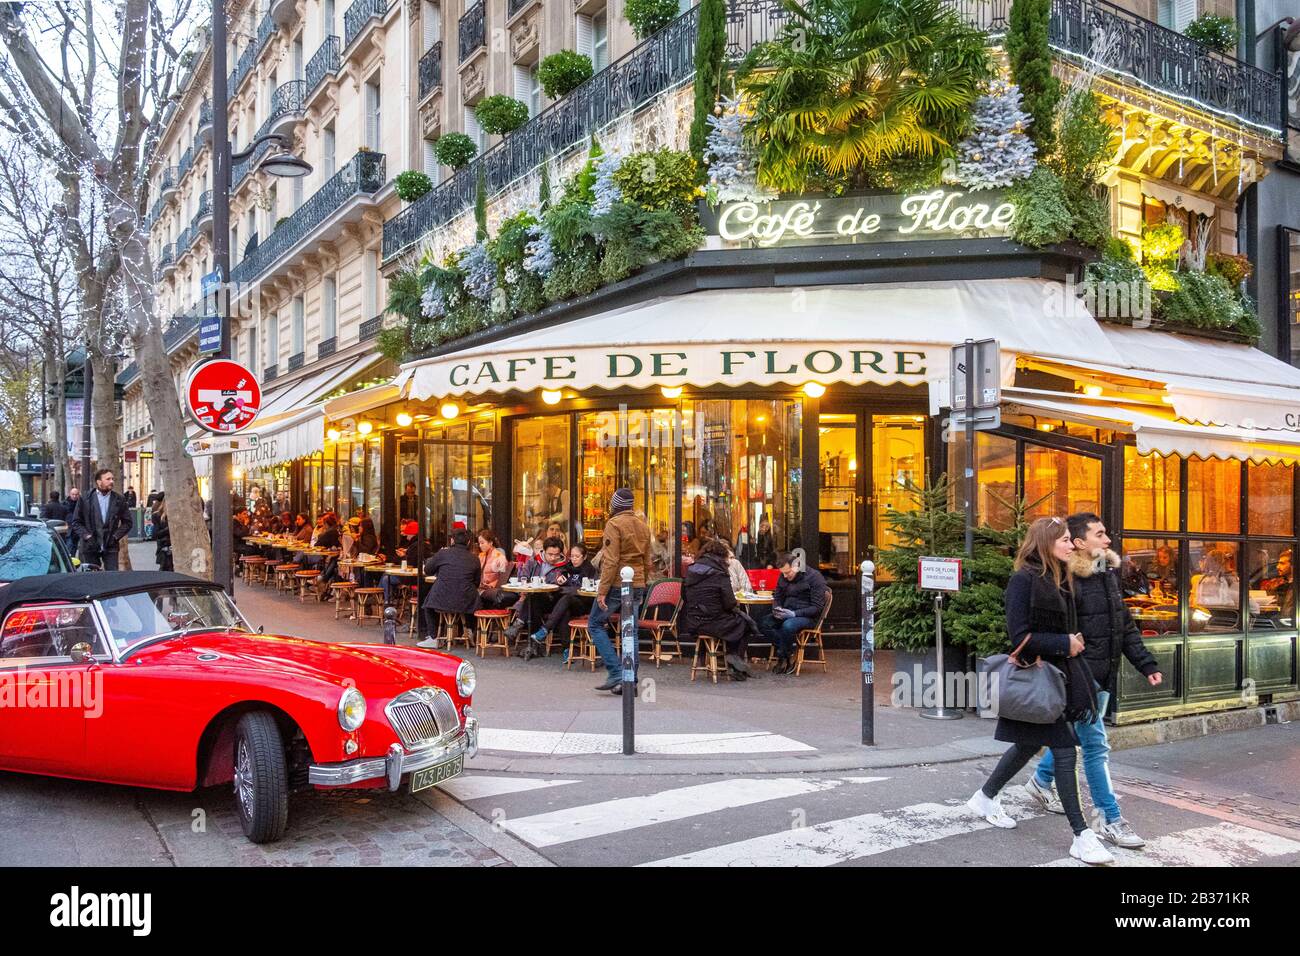 Cafe de flore, paris hi-res stock photography and images - Alamy